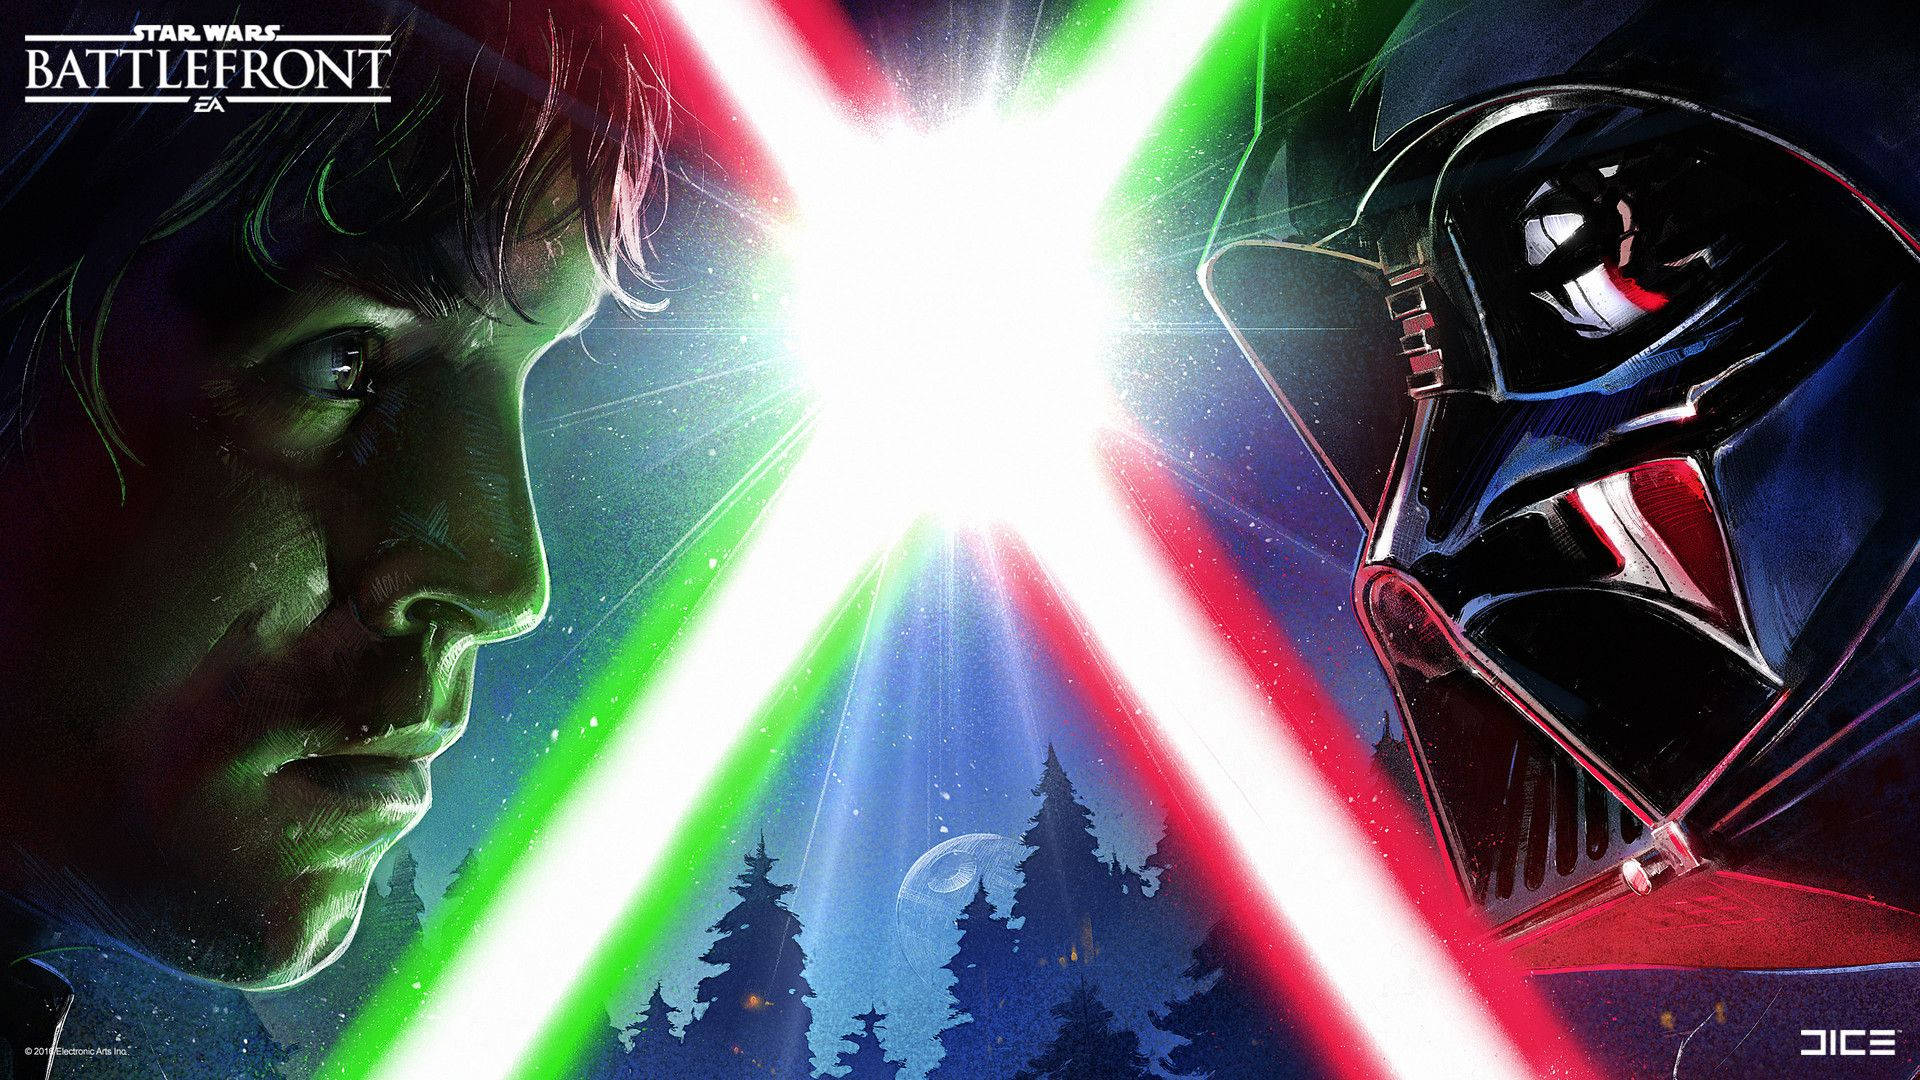 “The Force Awakens” - Luke Skywalker Wallpaper